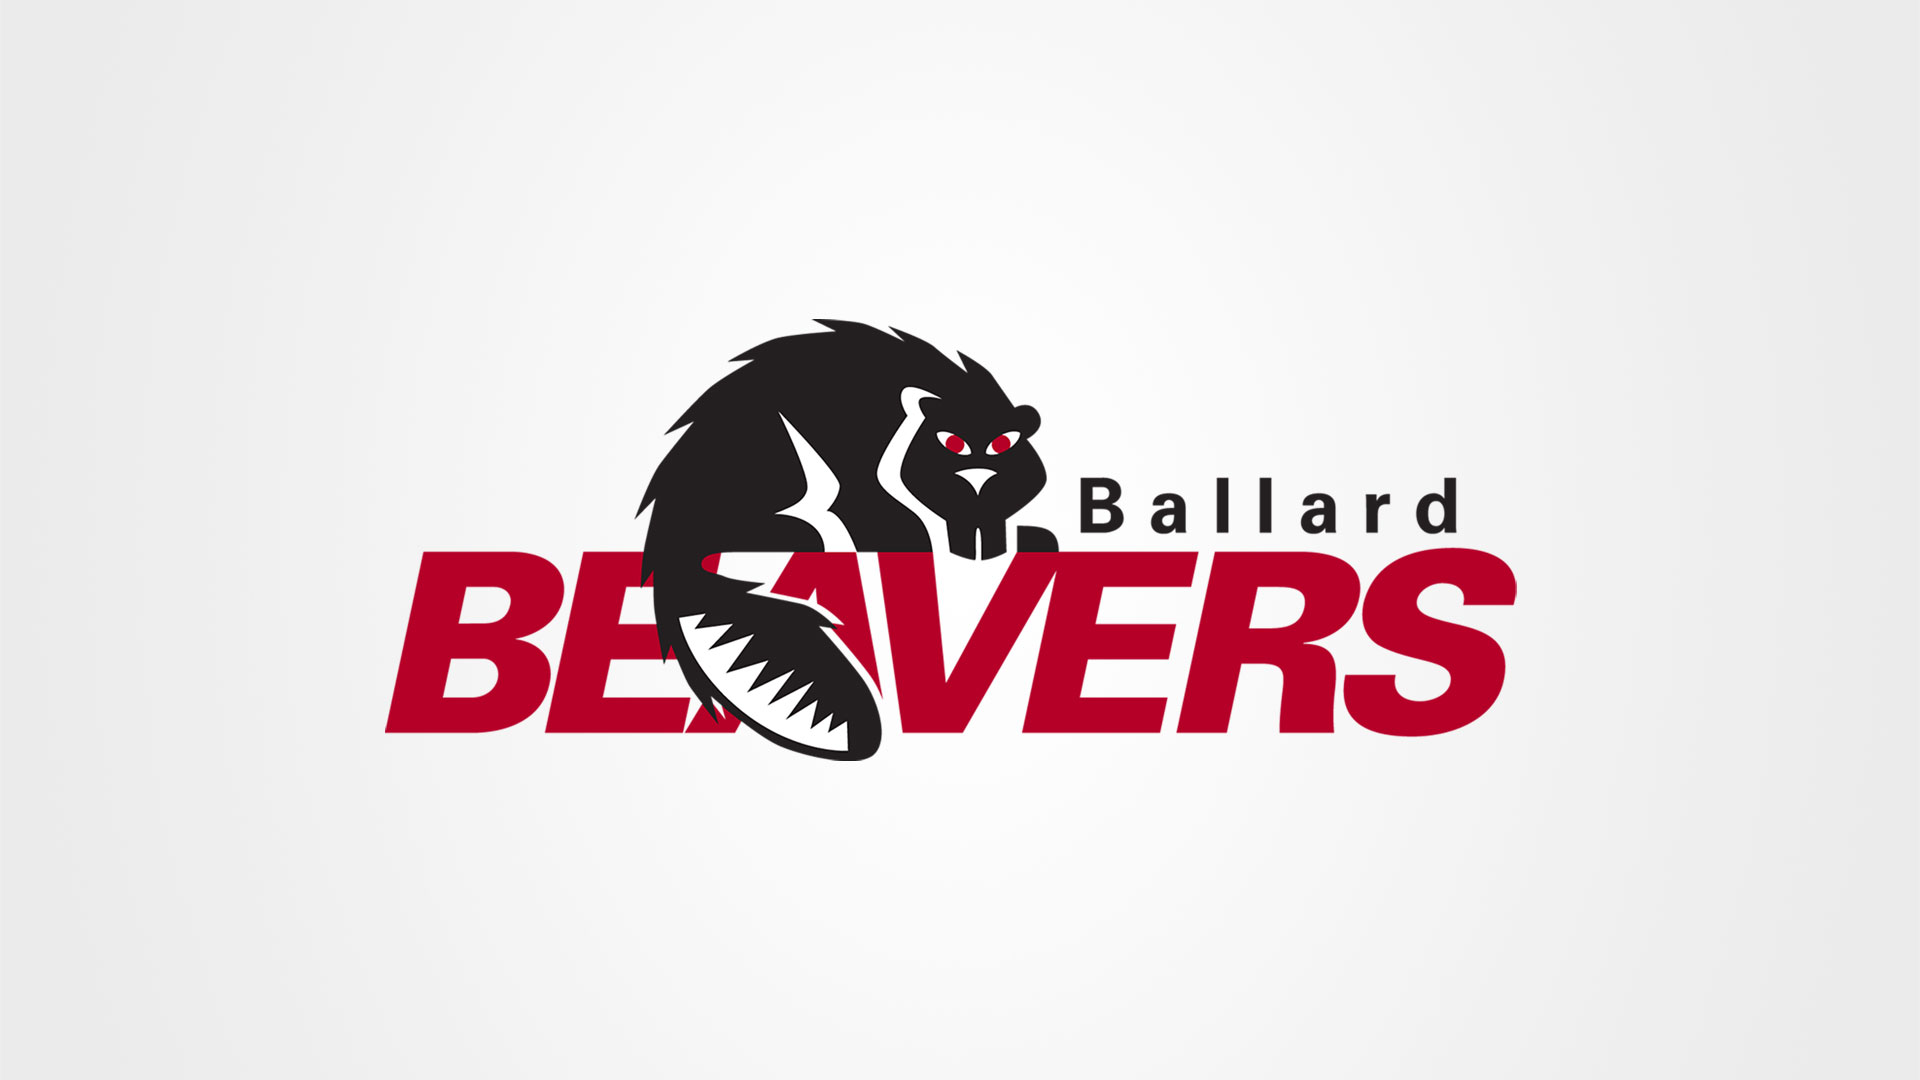 Ballard-Beavers-Logo-1920x1080